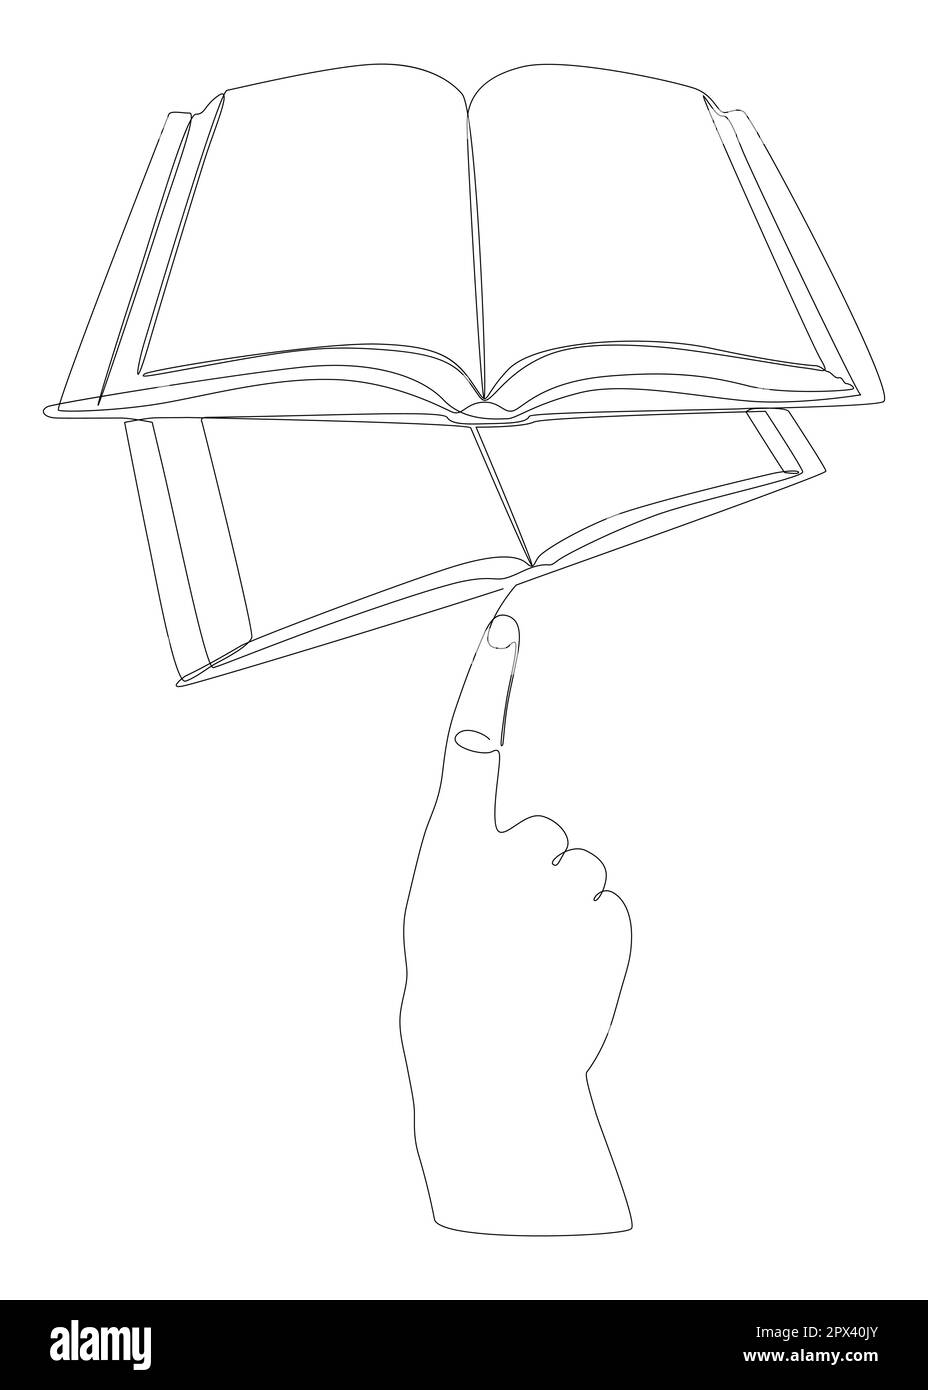 Eine durchgängige Hand mit mehreren Büchern. Vektorkonzept zur Darstellung dünner Linien. Kontur Zeichnen kreativer Ideen. Stock Vektor